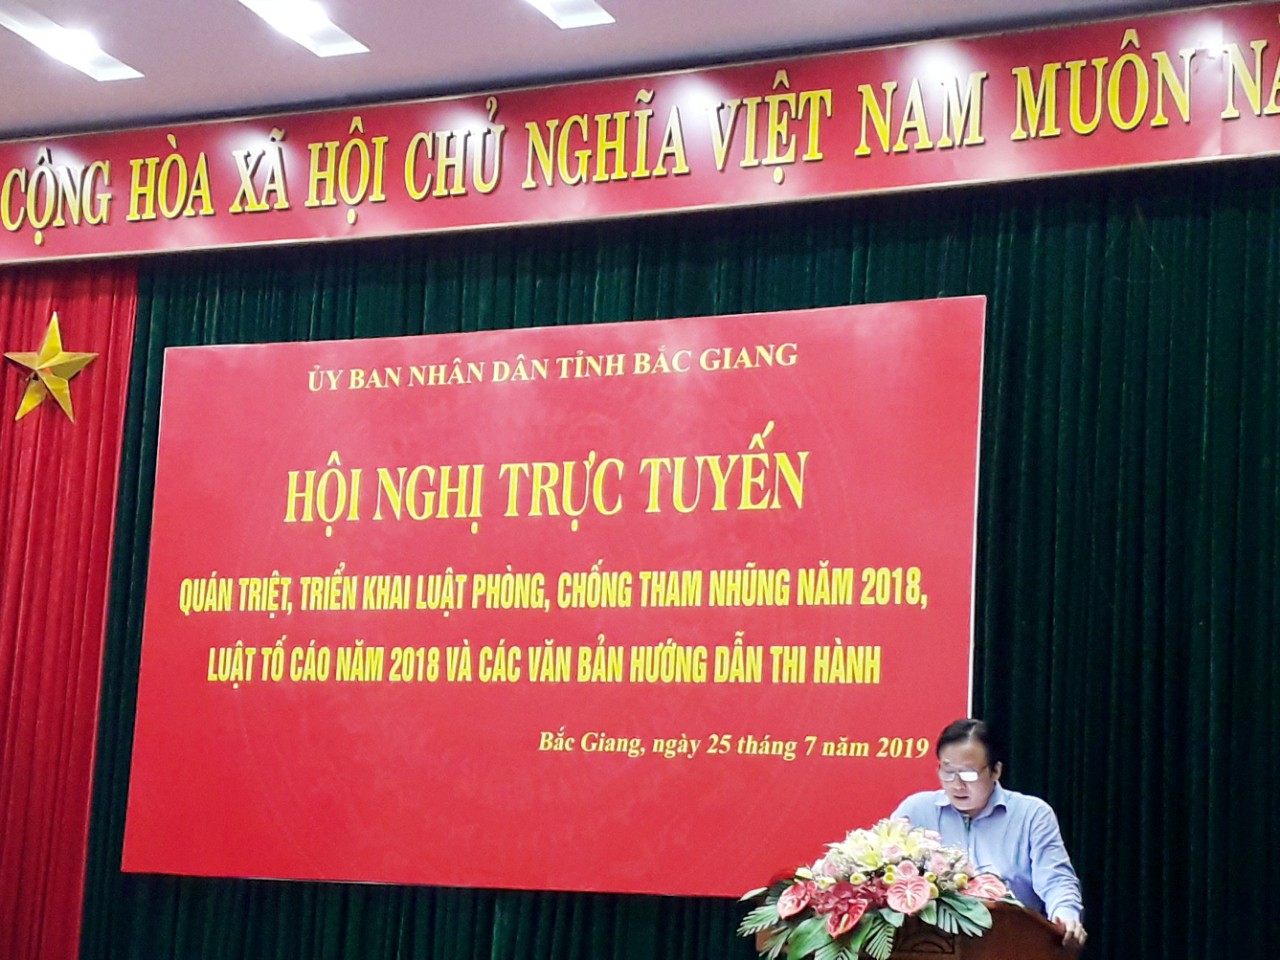 UBND tỉnh Bắc Giang tổ chức tập huấn Luật phòng, chống tham nhũng năm 2018 và Luật Tố cáo năm 2018